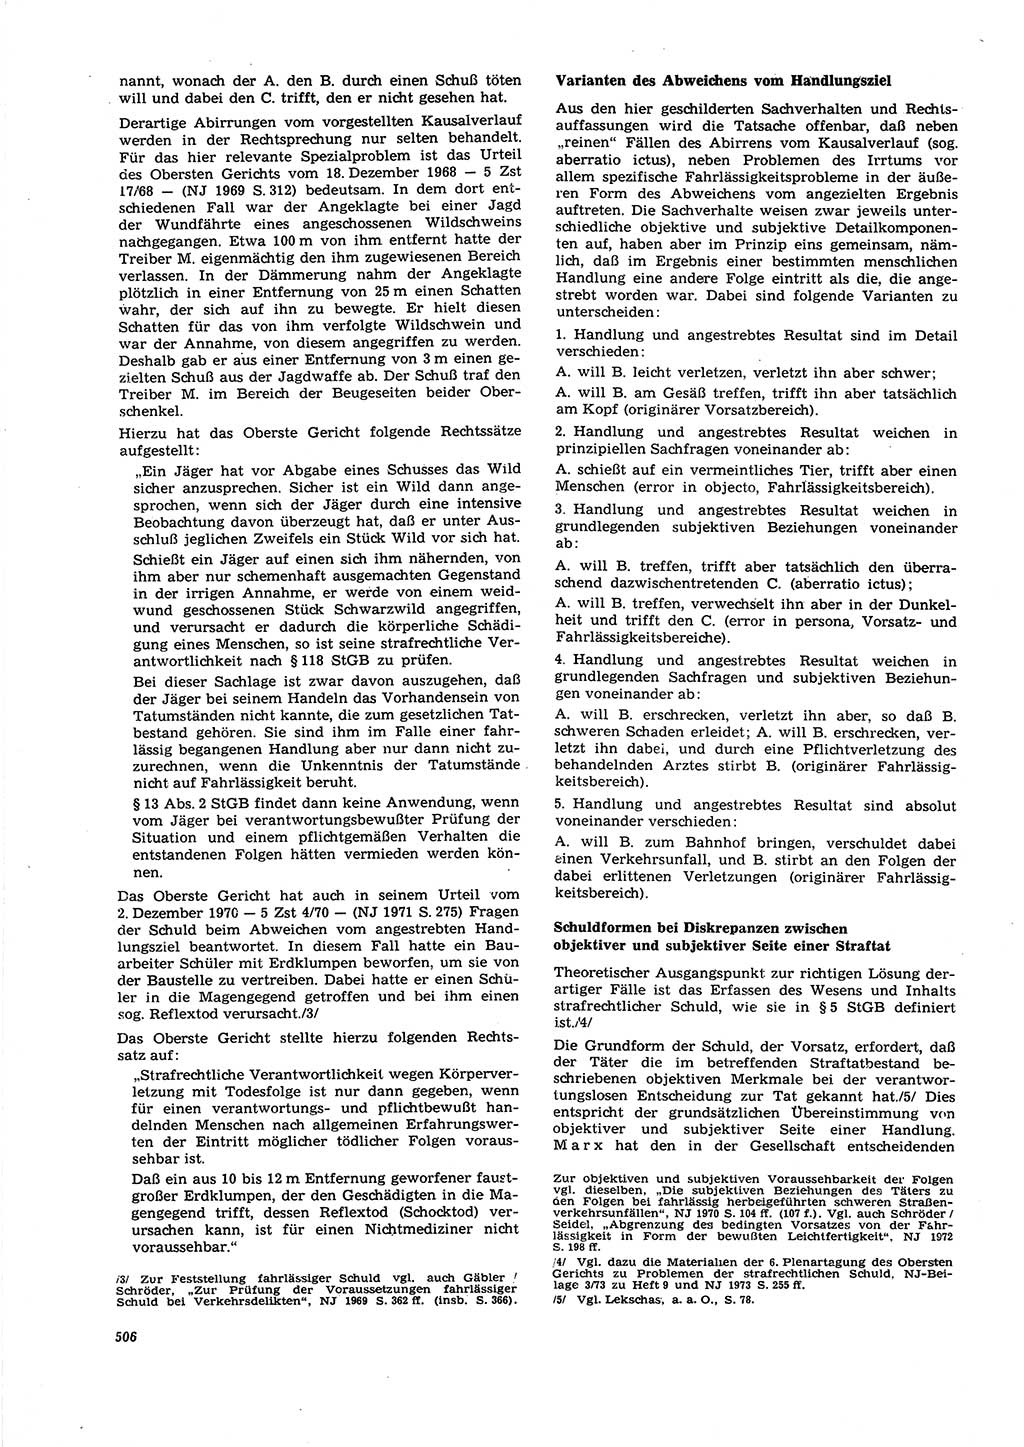 Neue Justiz (NJ), Zeitschrift für Recht und Rechtswissenschaft [Deutsche Demokratische Republik (DDR)], 27. Jahrgang 1973, Seite 506 (NJ DDR 1973, S. 506)